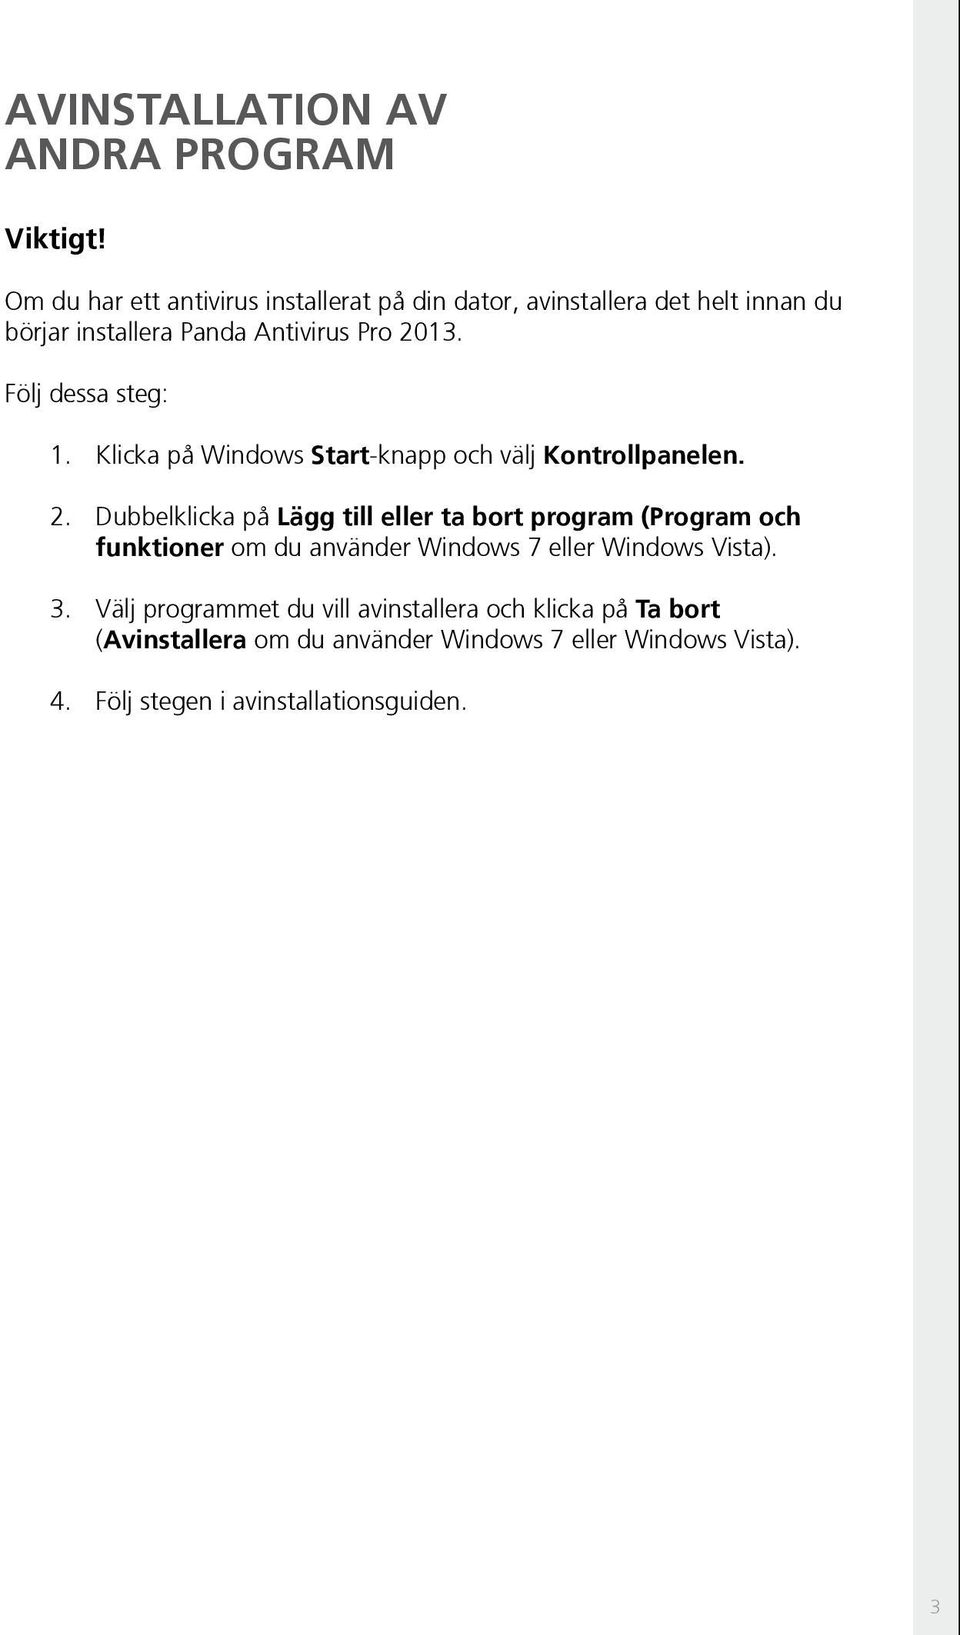 Följ dessa steg: 1. Klicka på Windows Start-knapp och välj Kontrollpanelen. 2.